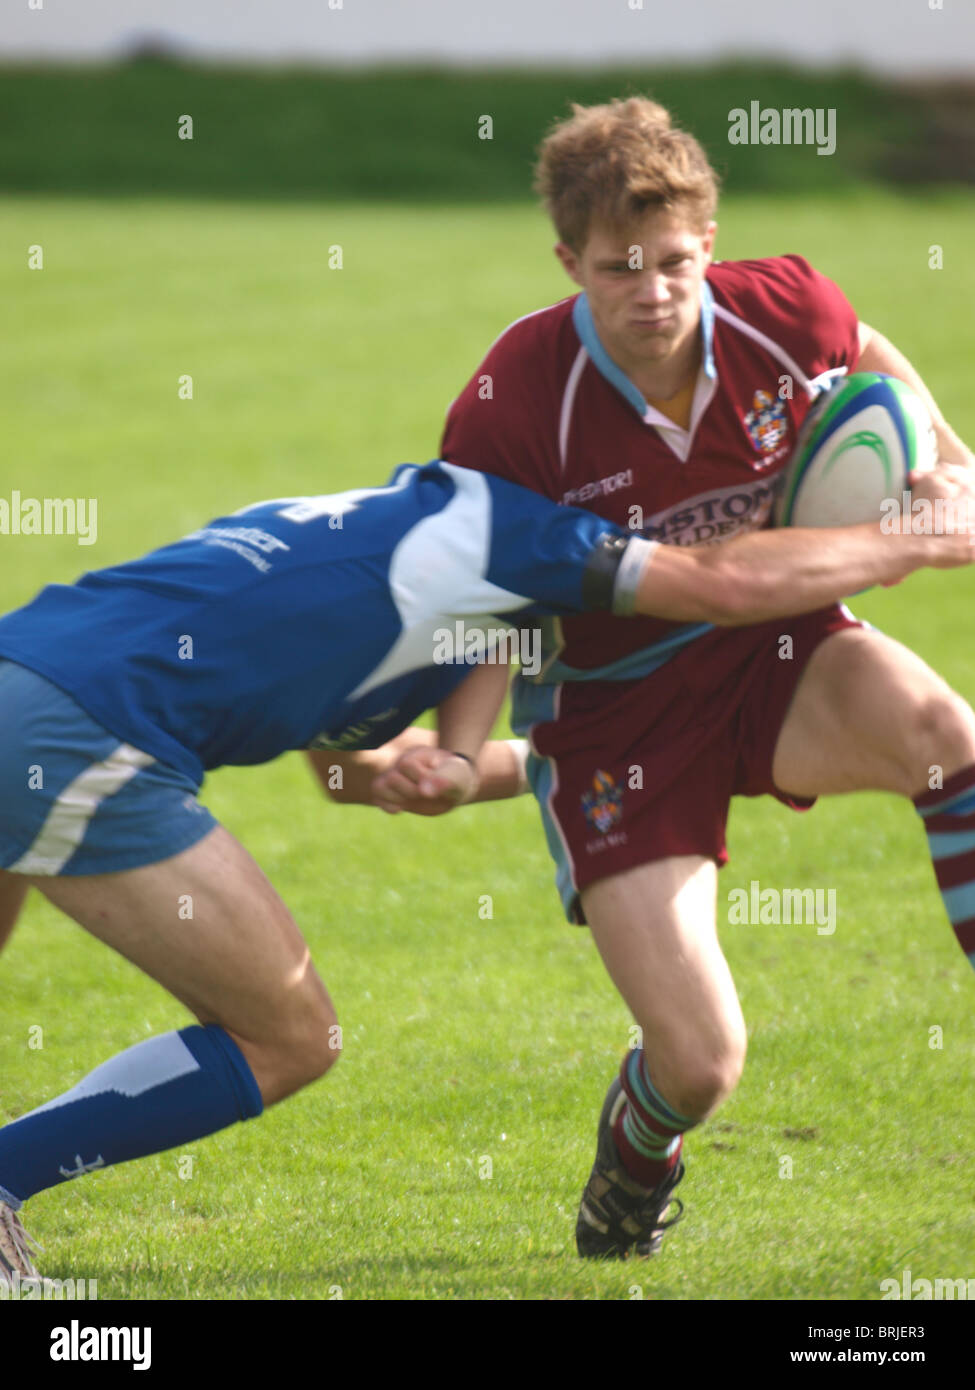 Rugby uk immagini e fotografie stock ad alta risoluzione - Alamy